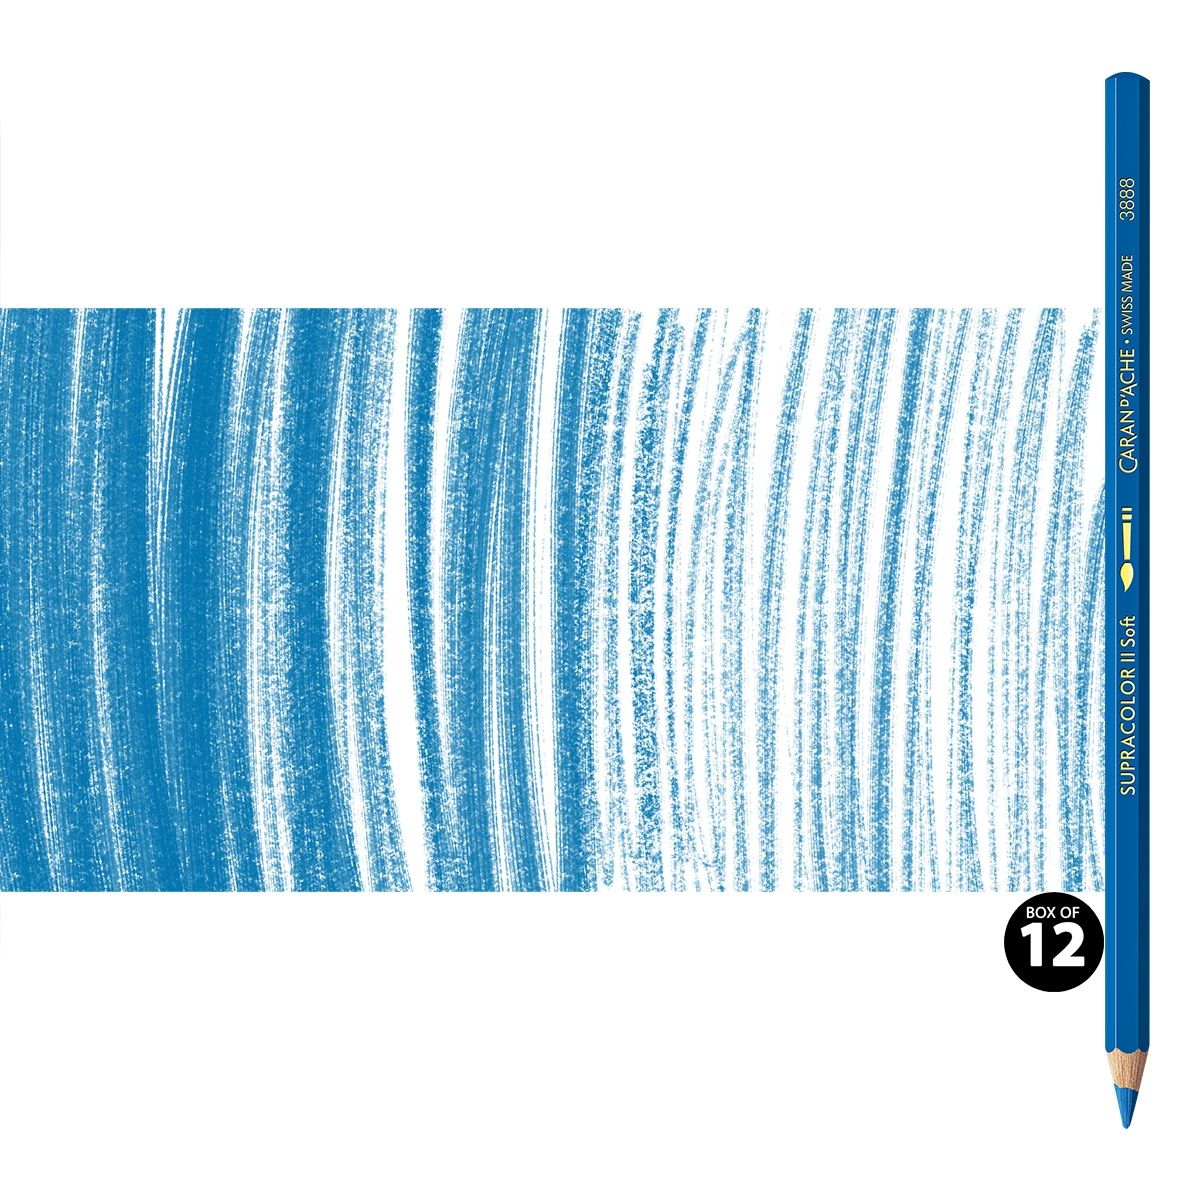 Supracolor II Watercolor Pencils Box of 12 No. 370 - Gentian Blue